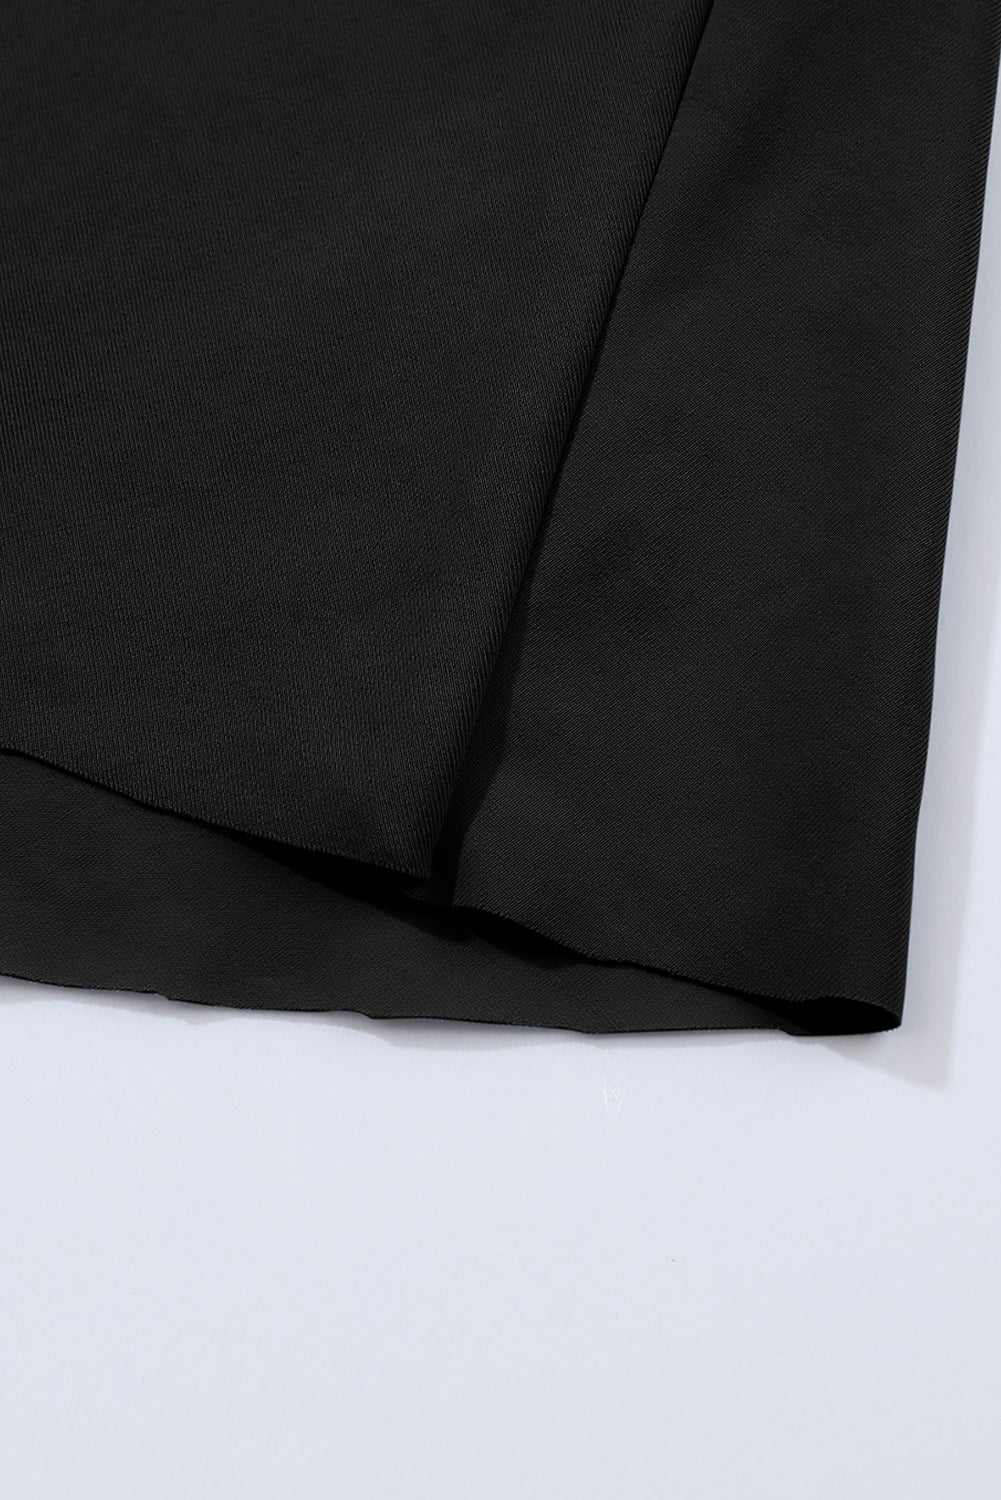 Schwarzes, zweifarbiges Patchwork-Badekleid mit gekreuzten Ausschnitten